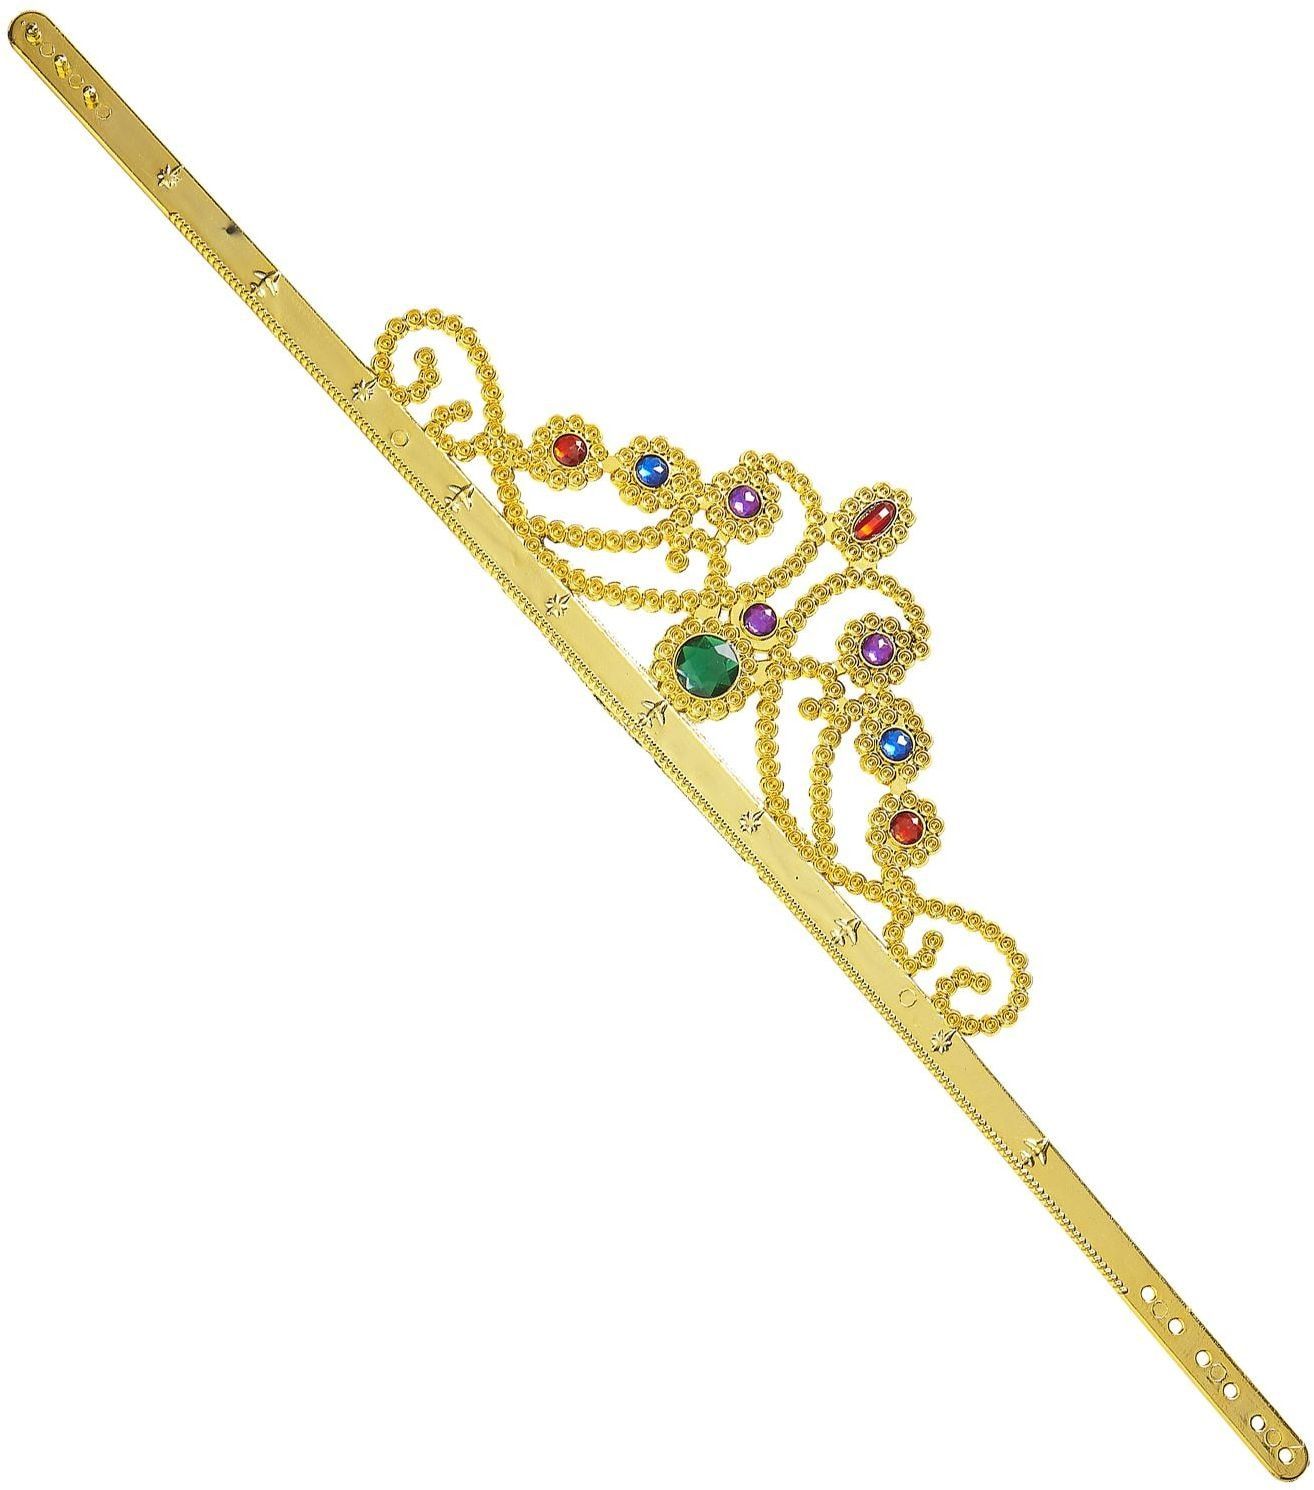 Gouden koninginnenkroon met juwelen